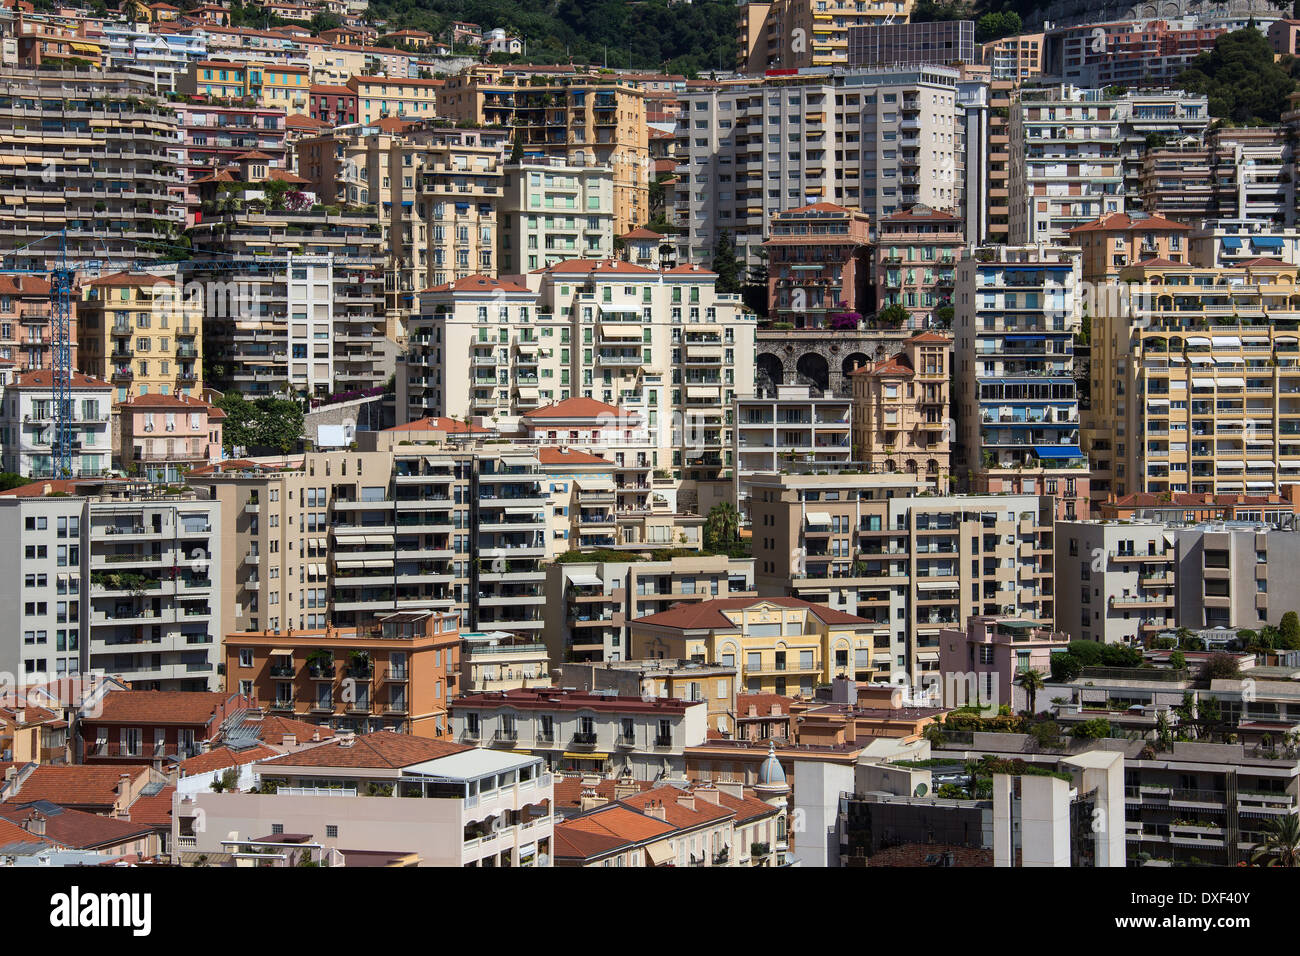 Das Fürstentum Monaco, einen souveränen Staat, gelegen an der französischen Riviera. Stockfoto